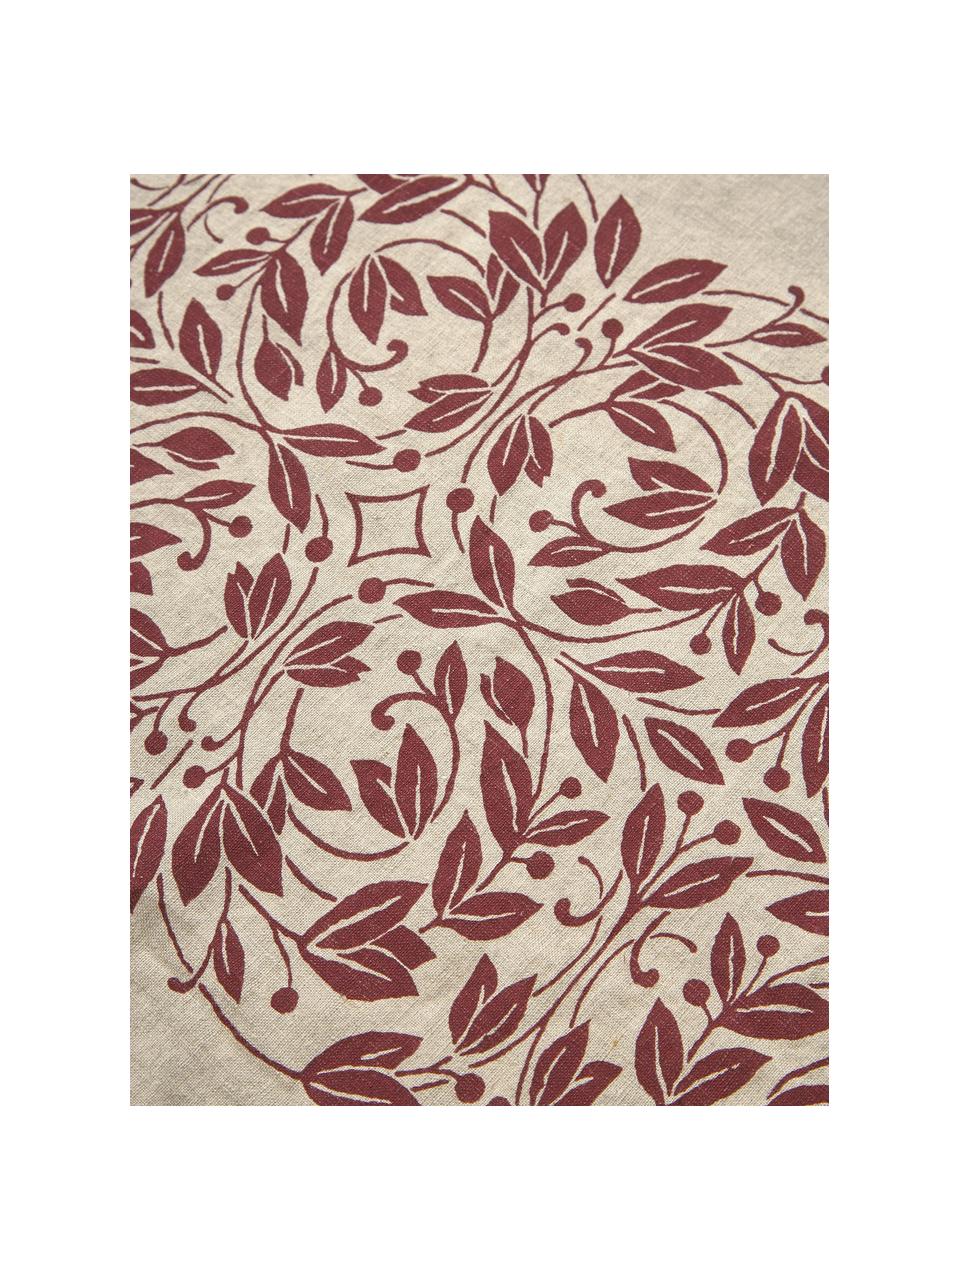 Leinen-Tischdecke Matilda mit floralem Muster, 100 % Leinen, Hellbeige, Weinrot, Für 6 - 10 Personen (B 150 x L 250 cm)